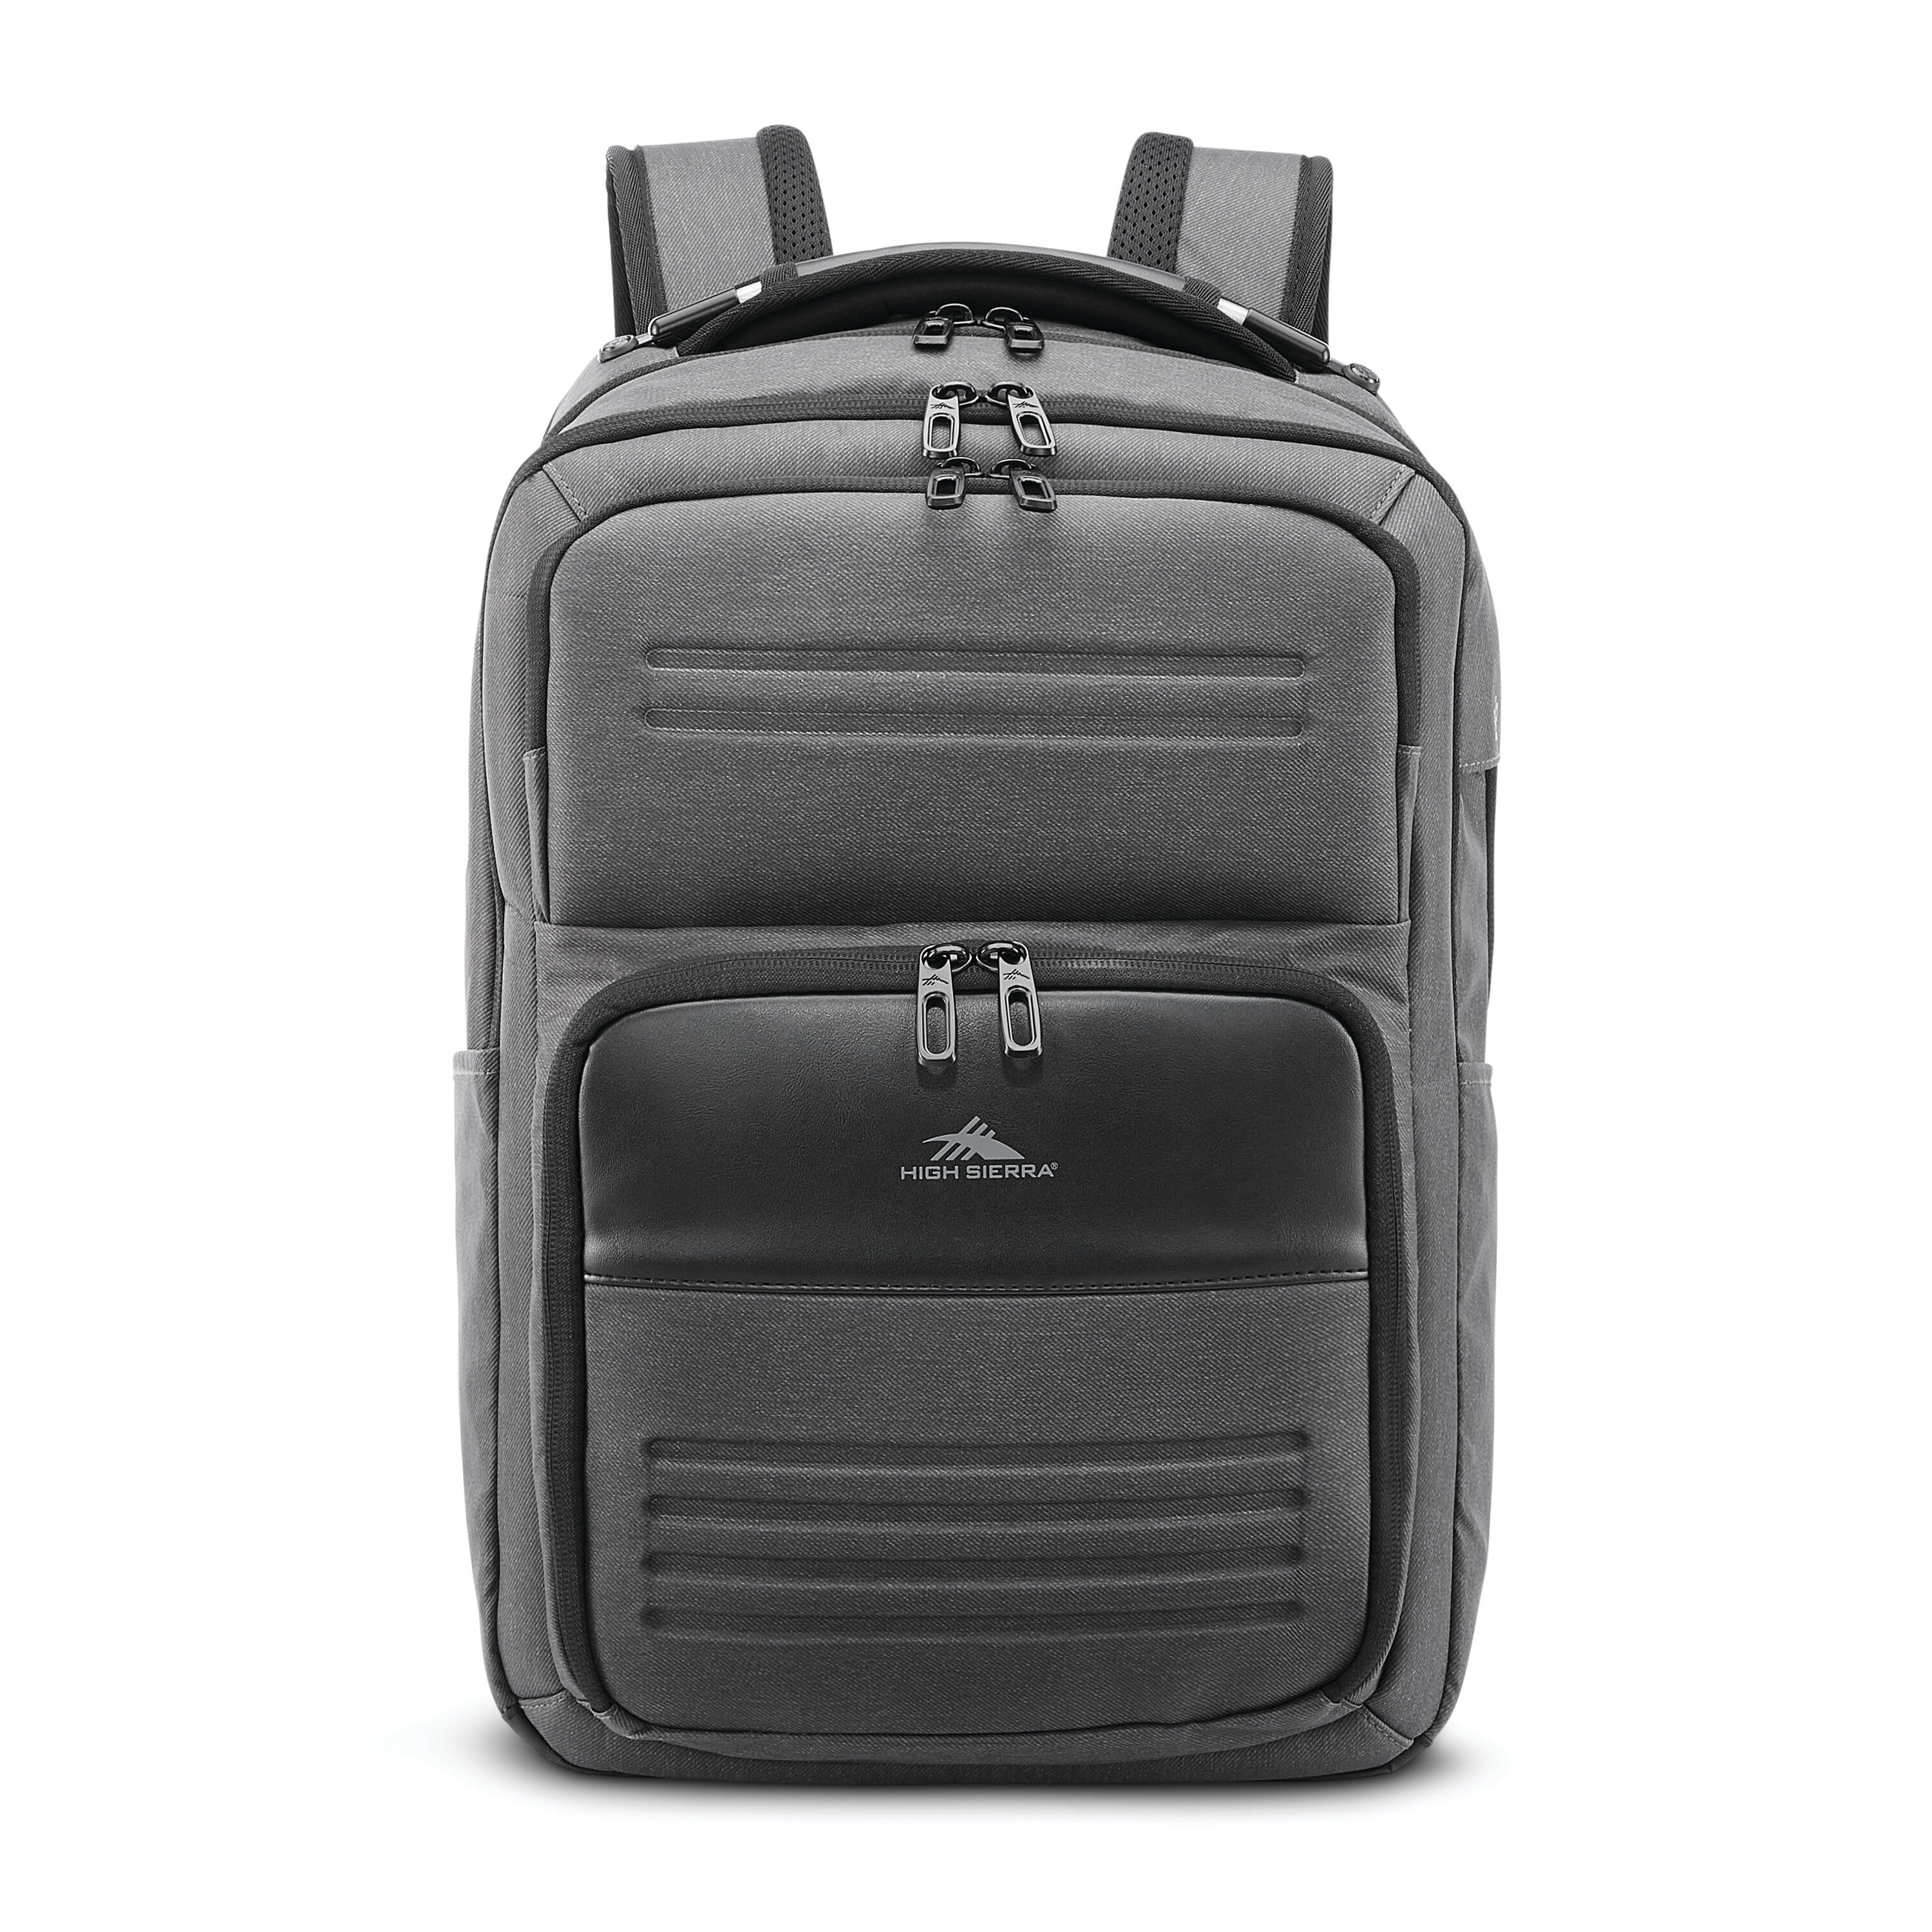 Buy Endeavor Elite 2.0 Backpack for USD 99.99 | High Sierra